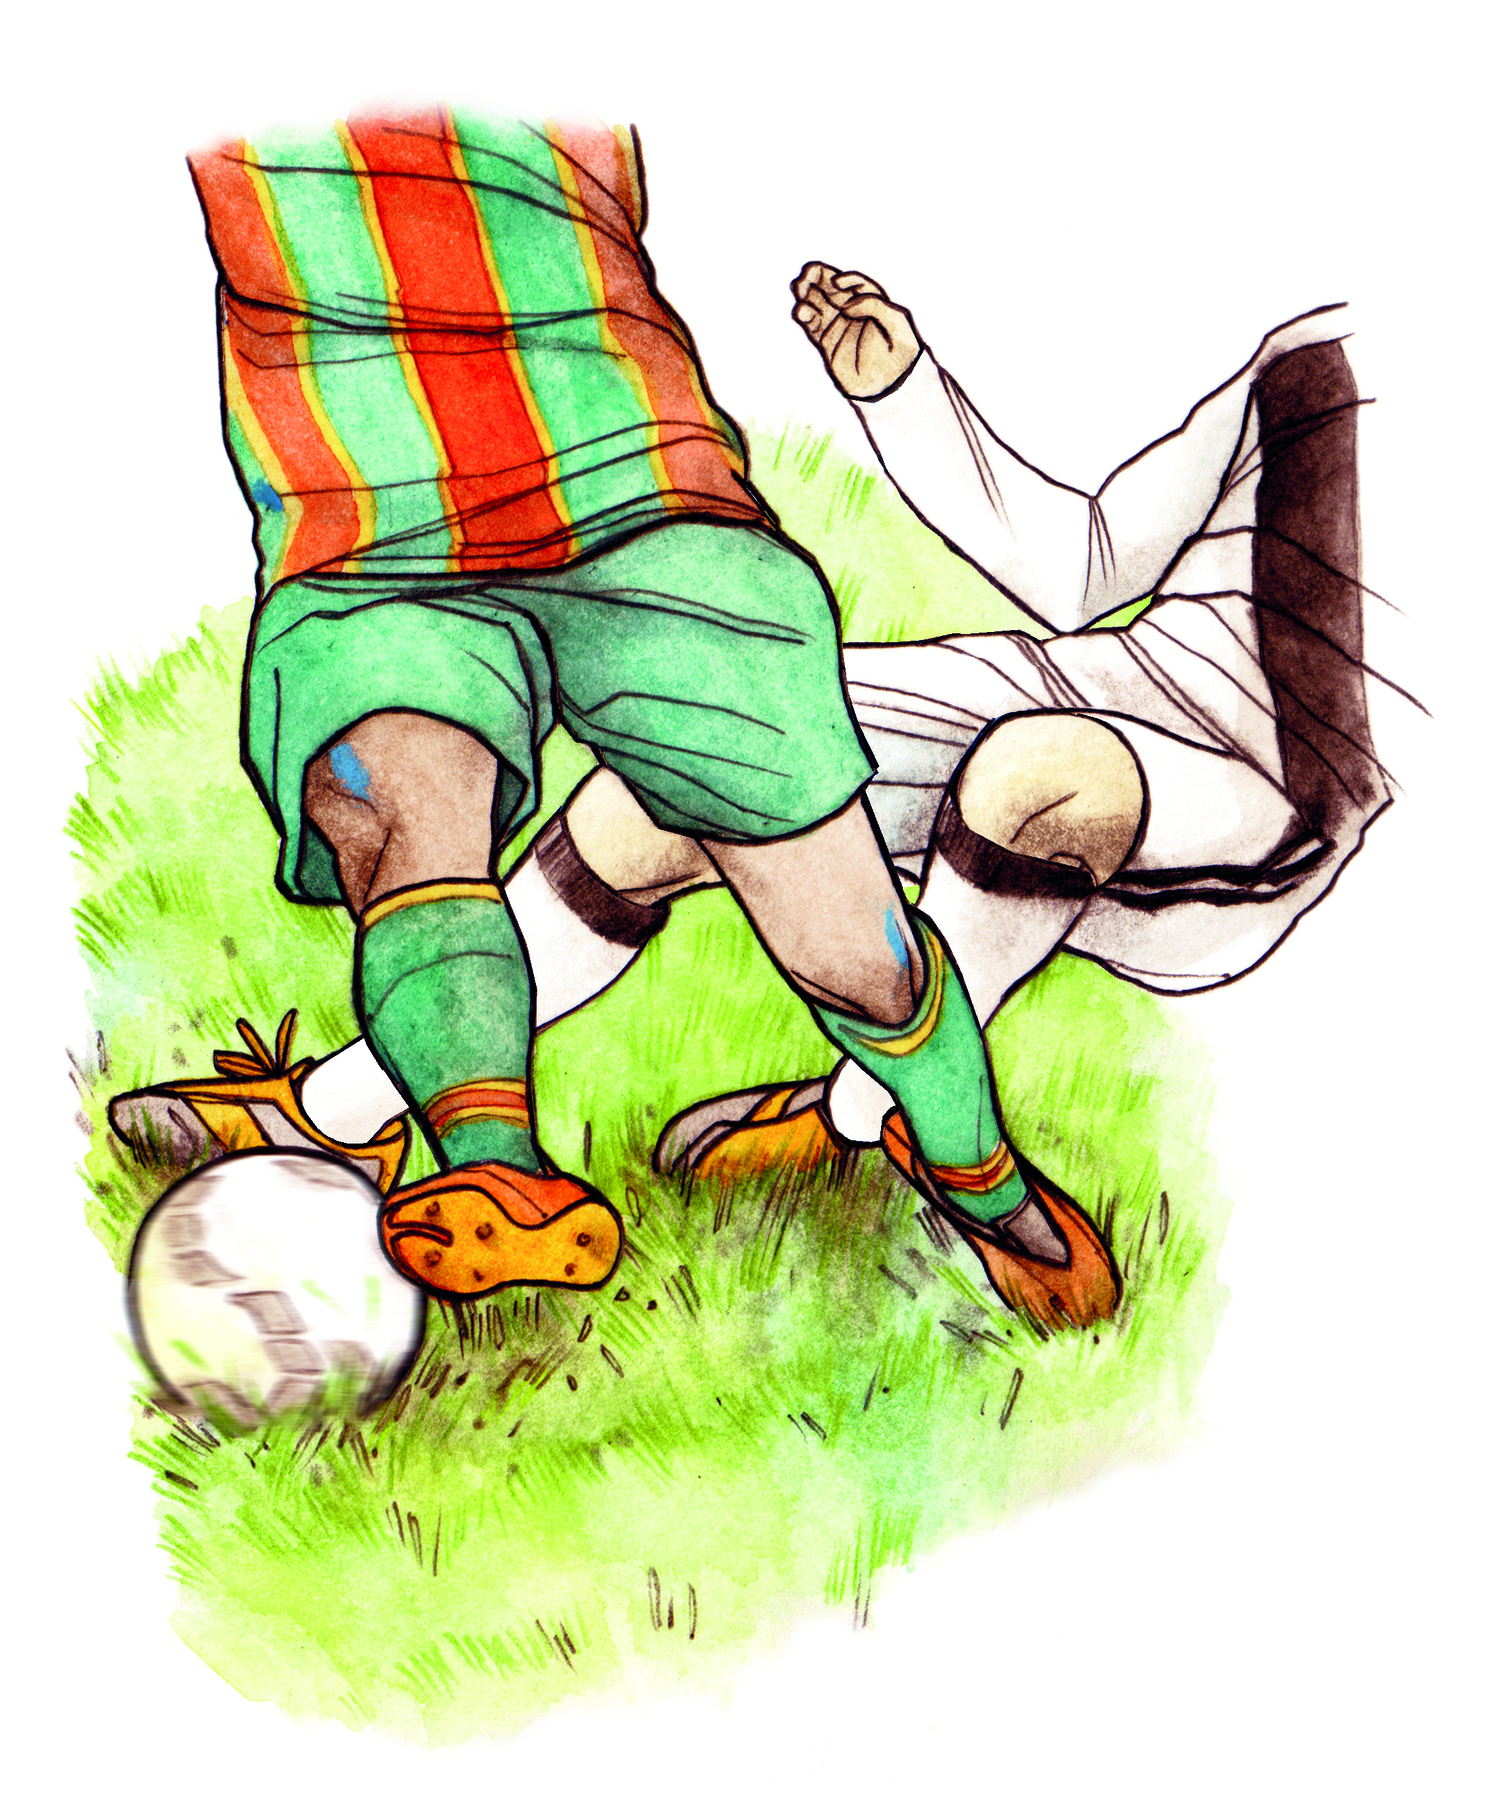 Ilustração. Destaque para as pernas de dois homens uniformizados driblando uma bola de futebol em um campo verde.